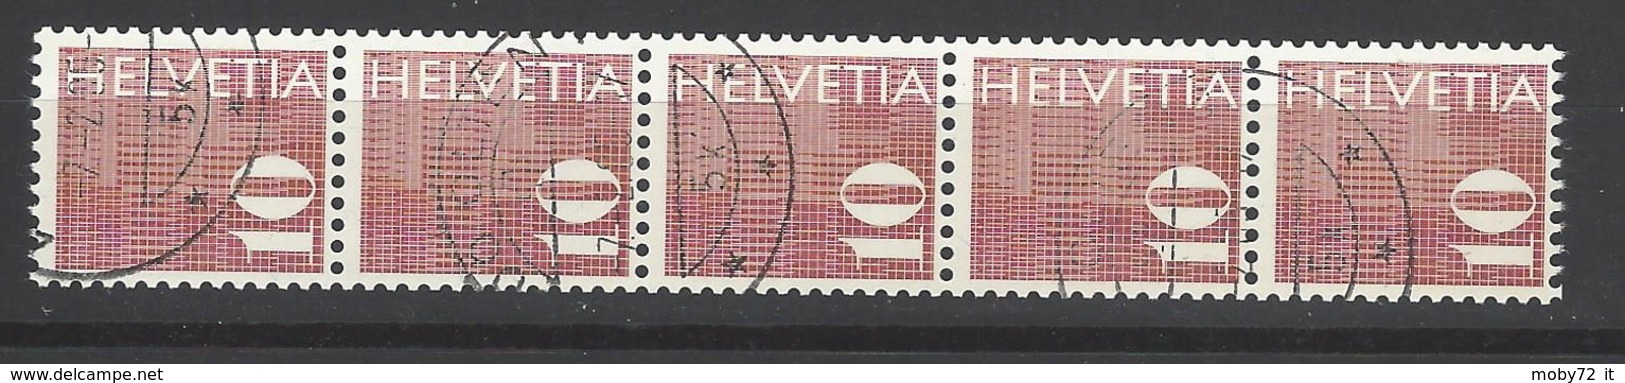 Svizzera - 1970 - Usato/used - Rollenmarken - Mi N. 933 - Rouleaux